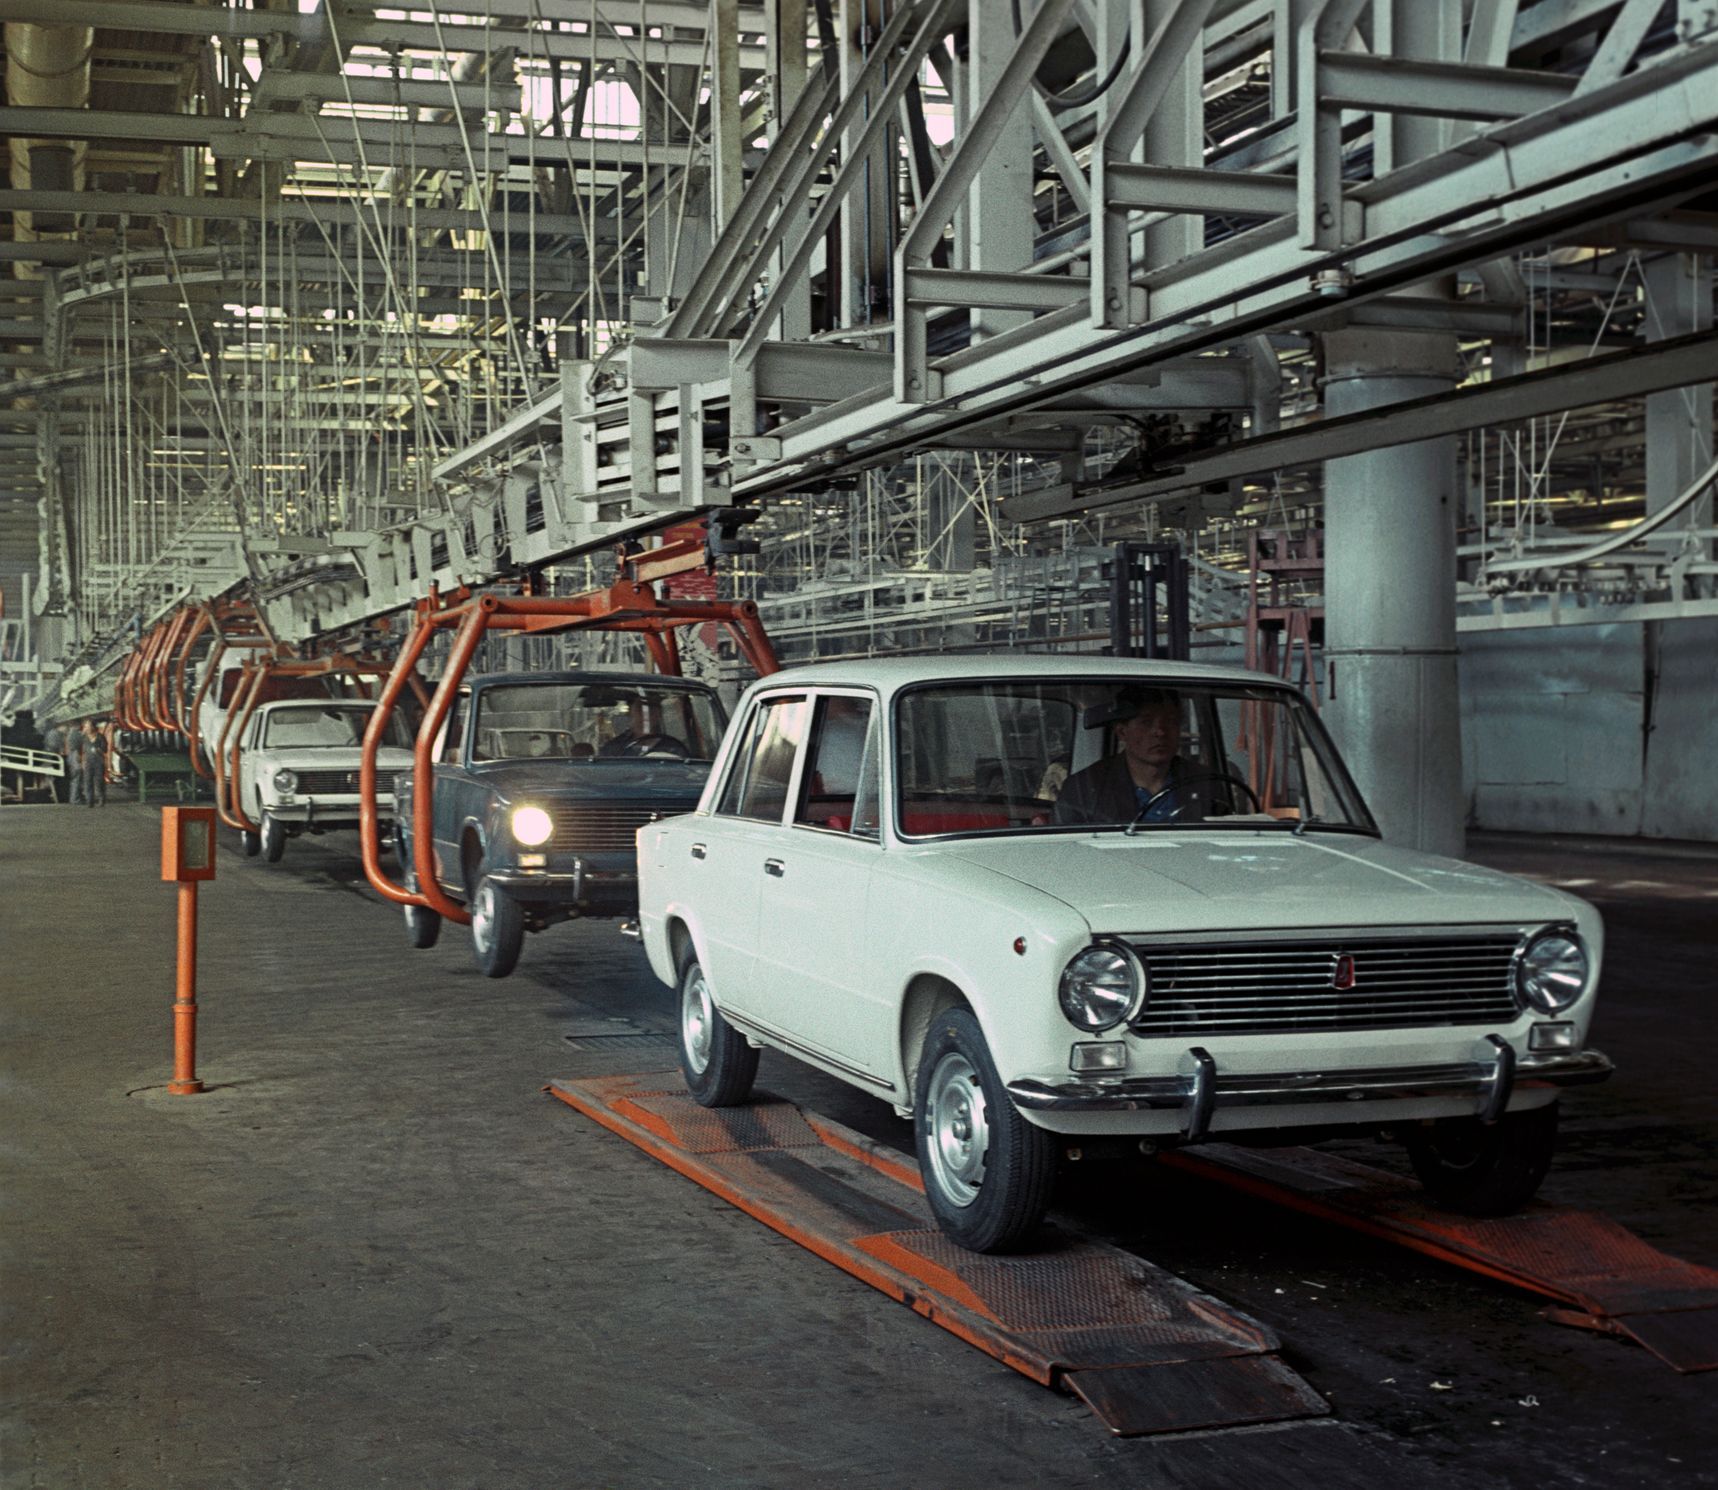 Сойти с конвейера. ВАЗ 2101 на конвейере. ВАЗ 2101 Жигули с завода. Волжский автозавод ВАЗ-2101. Волжский автомобильный завод в Тольятти 1966.